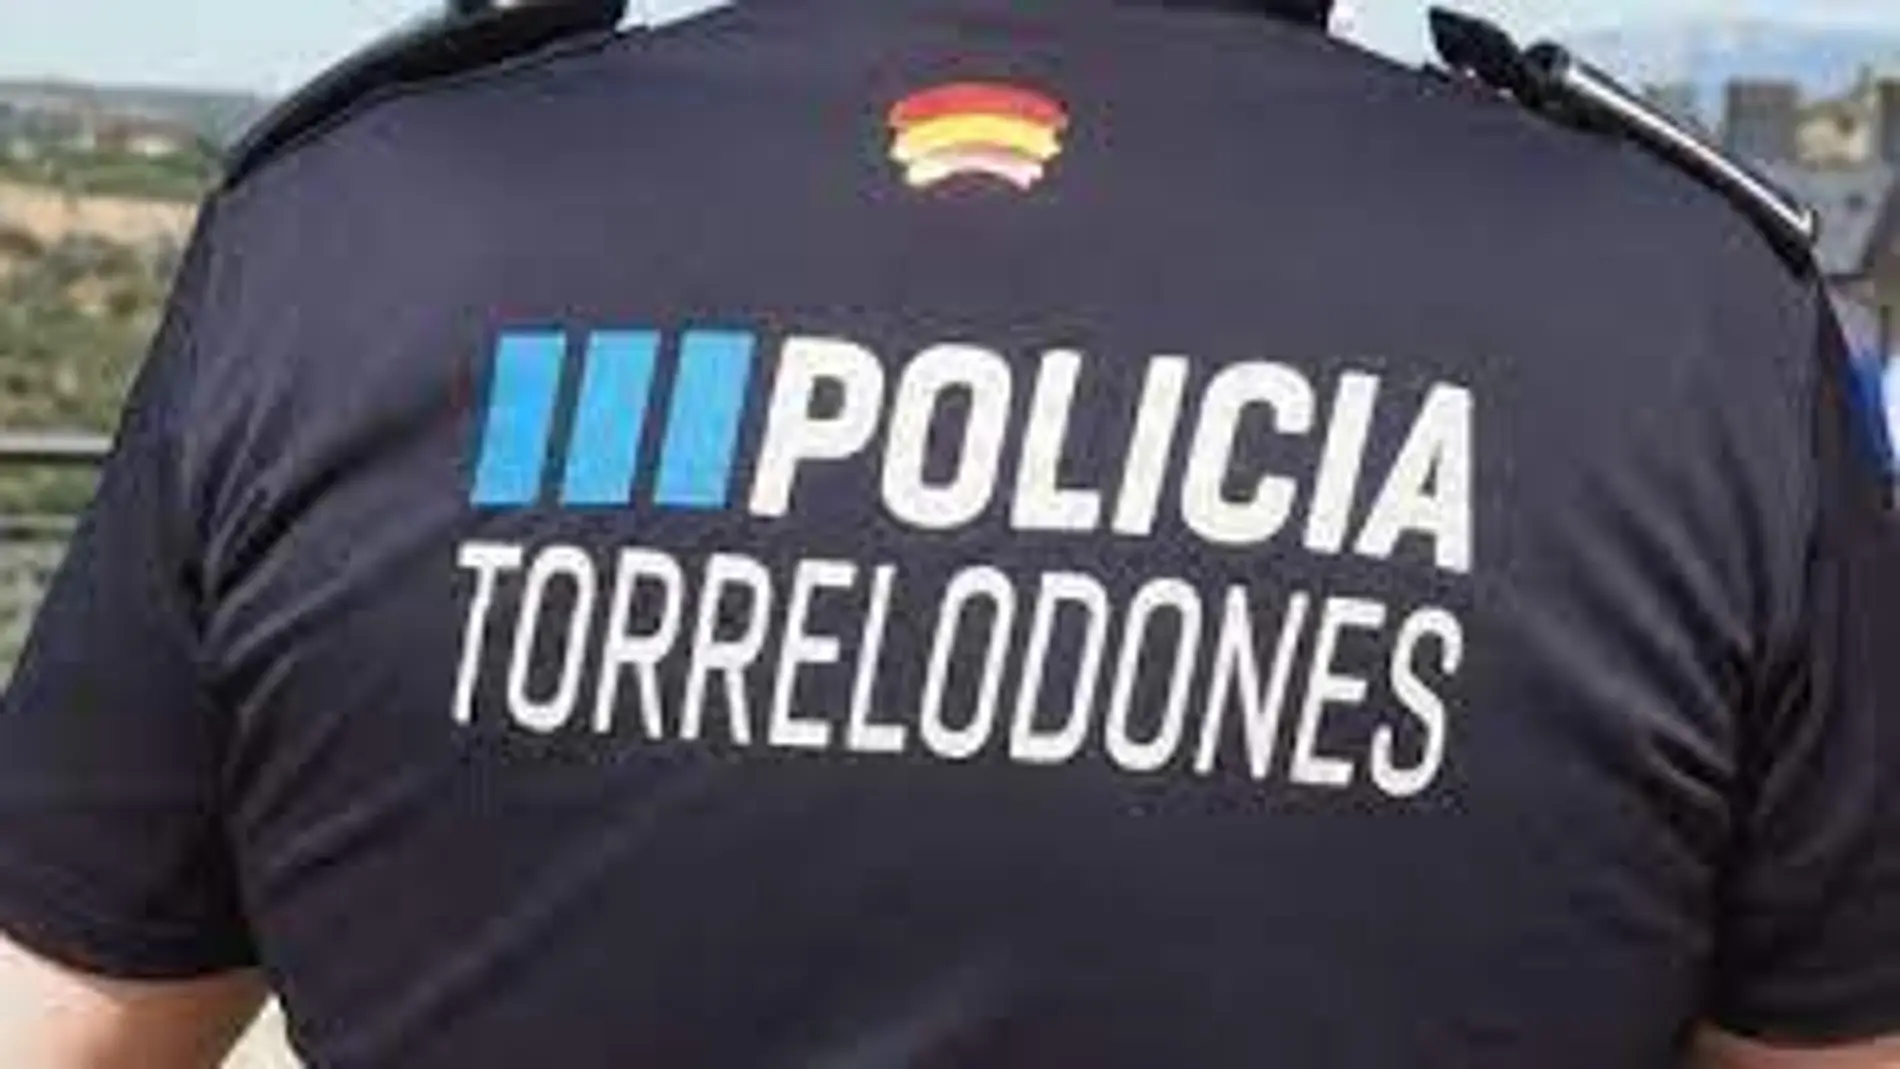 El candidato trans a policía de Torrelodones pasa las pruebas físicas como hombre